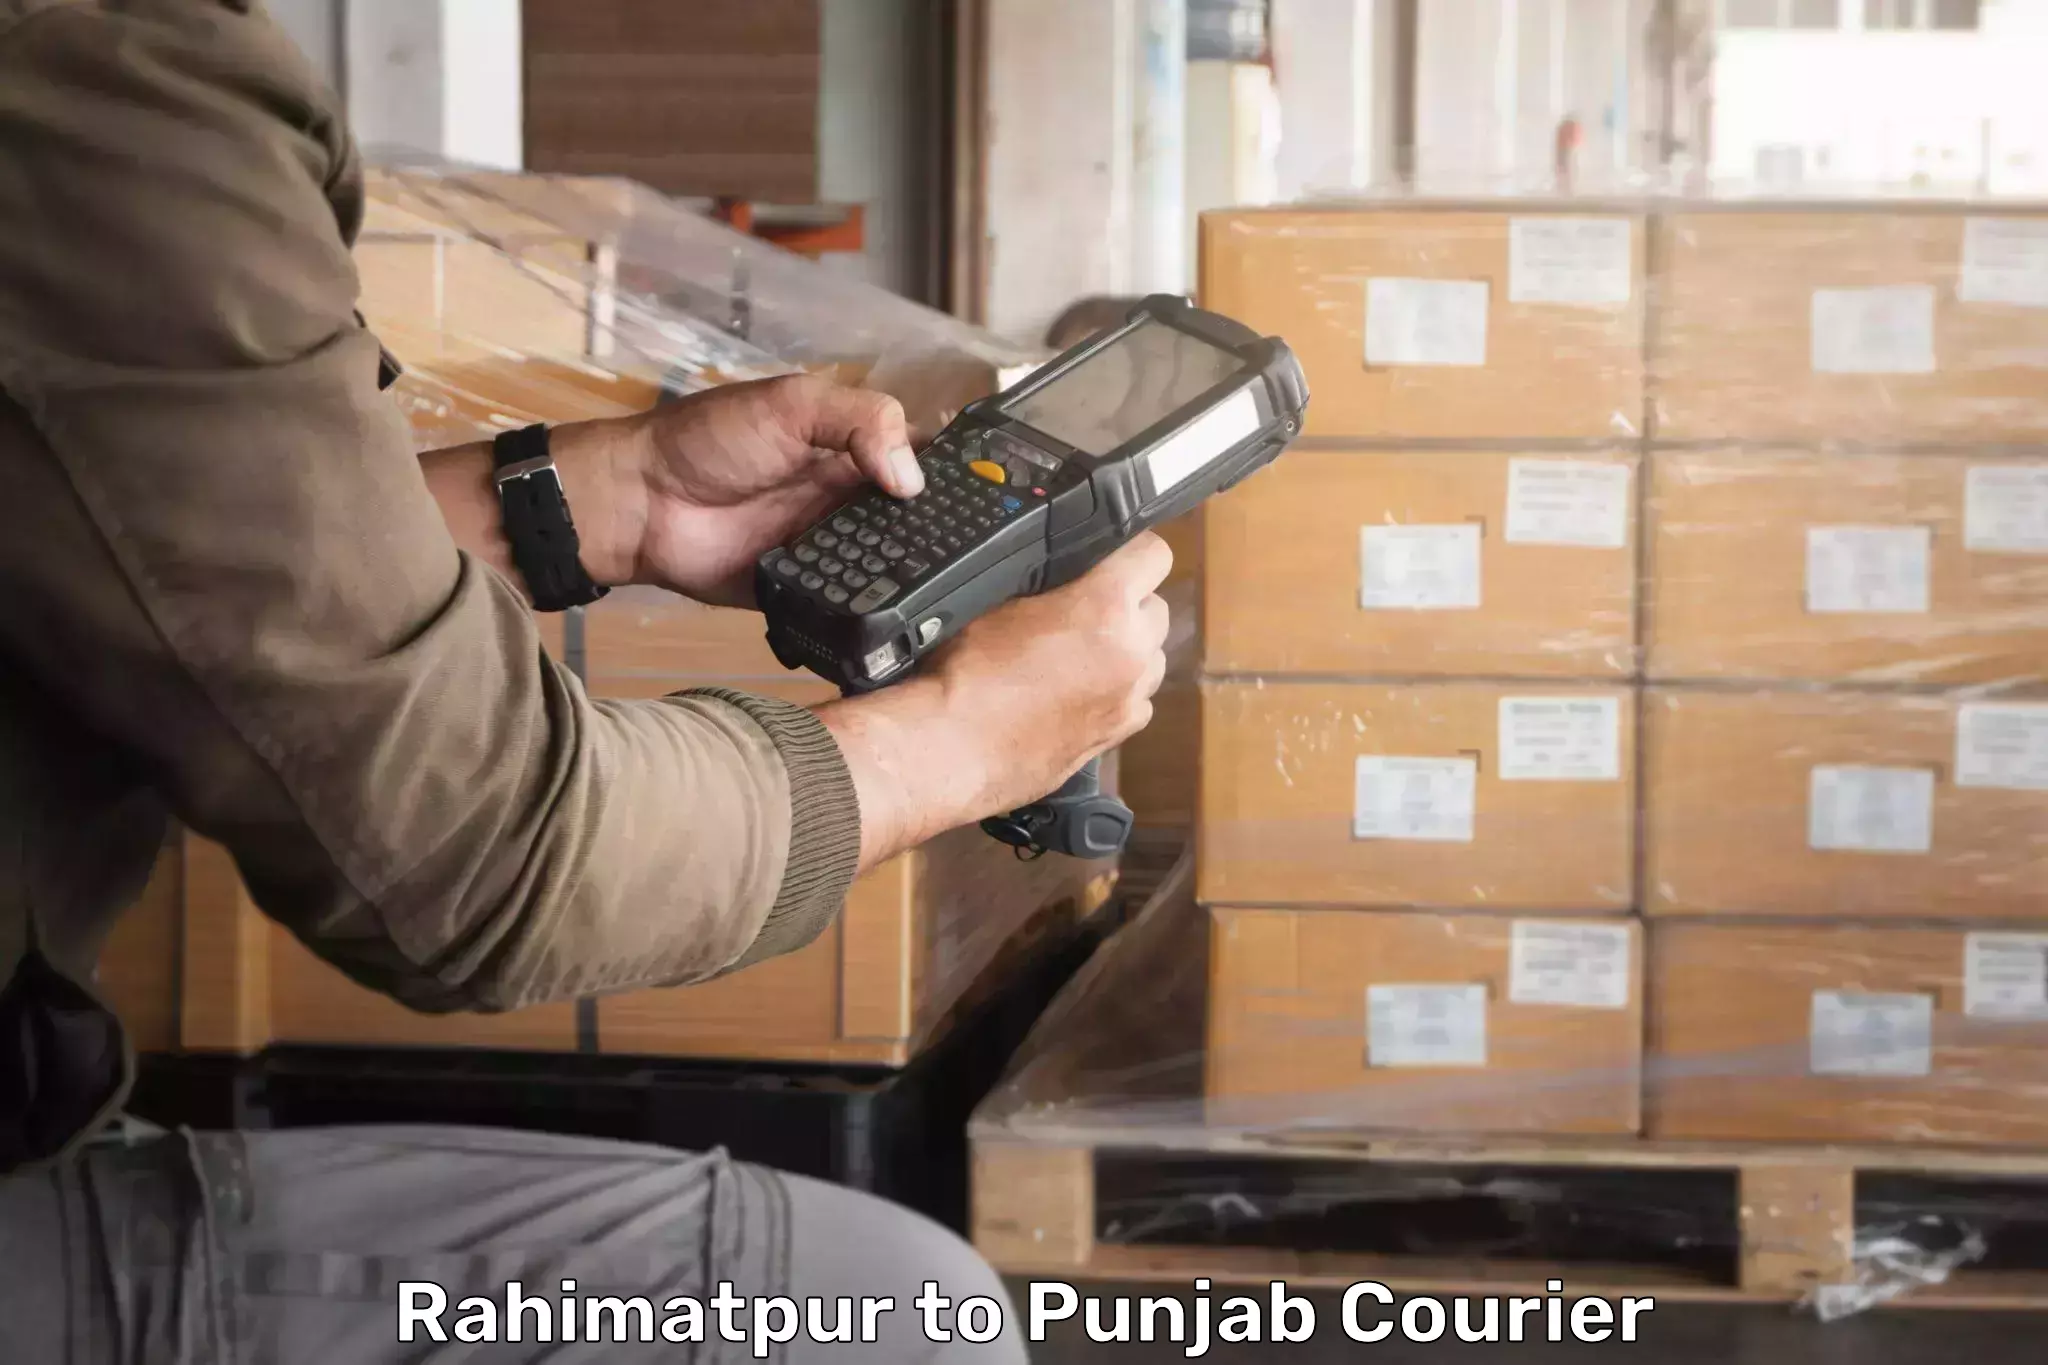 Smart parcel tracking Rahimatpur to Punjab